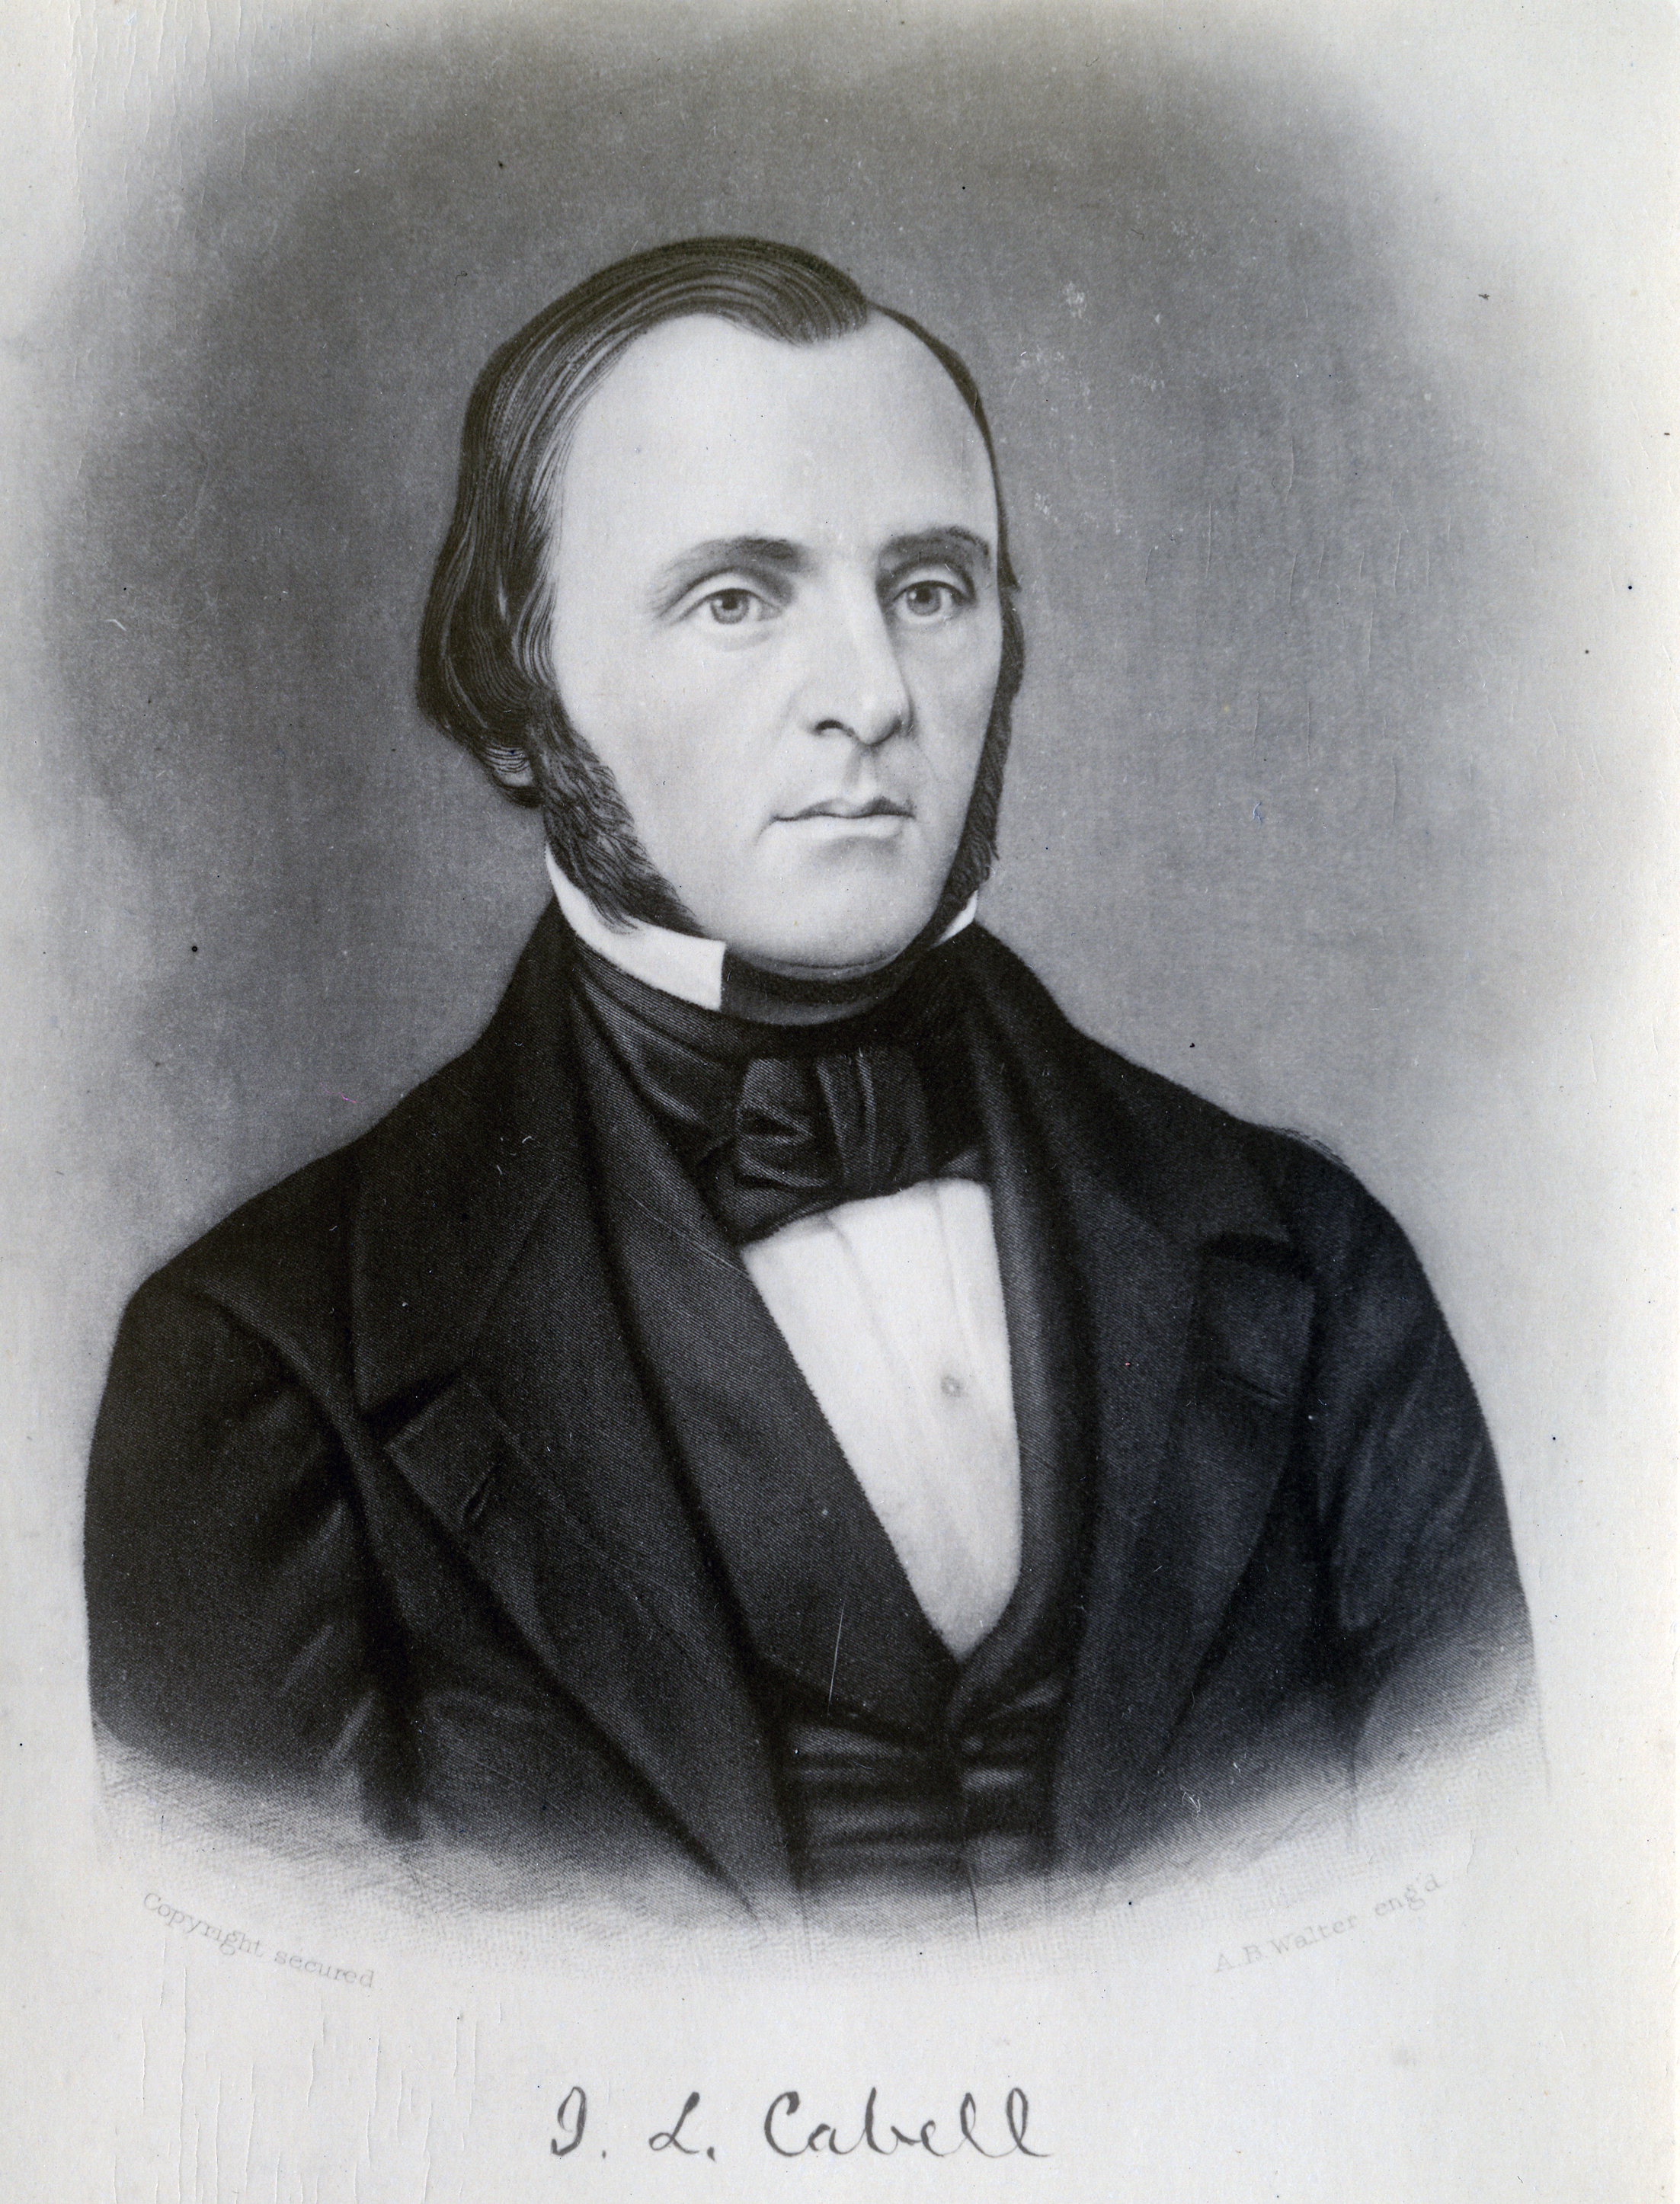 J. L. Cabell portrait